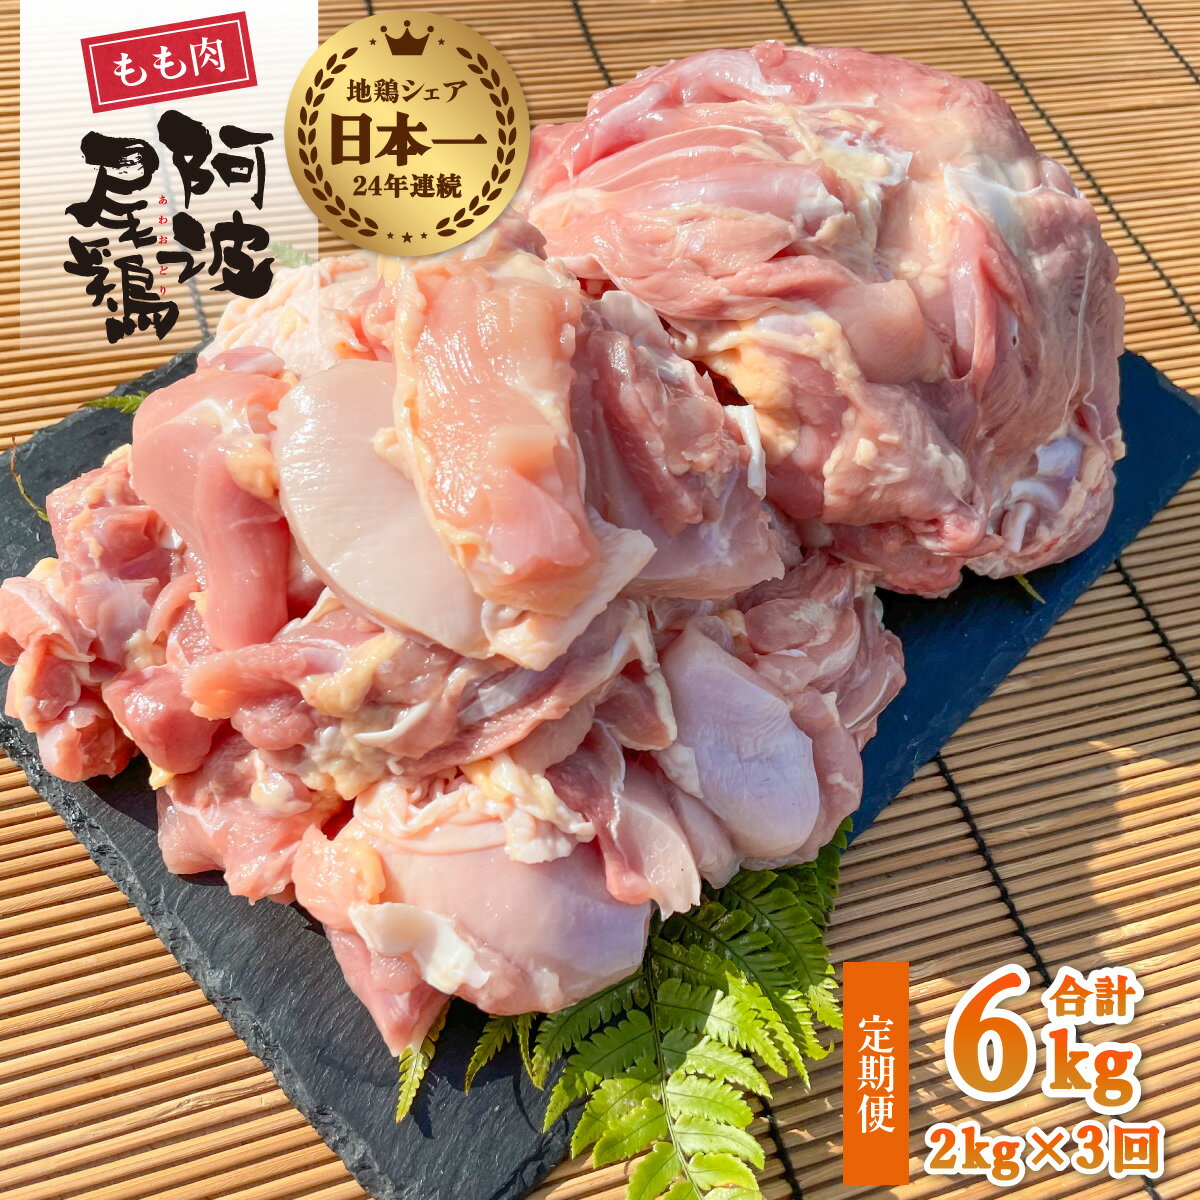 【ふるさと納税】 最高級 地鶏 鶏もも 3ヶ月 定期便 国産 日本一 阿波尾鶏 小分け 約6kg (約2kg×3回) 冷凍 切り身 正肉 あわおどり 鶏もも肉 鶏モモ 鶏モモ肉